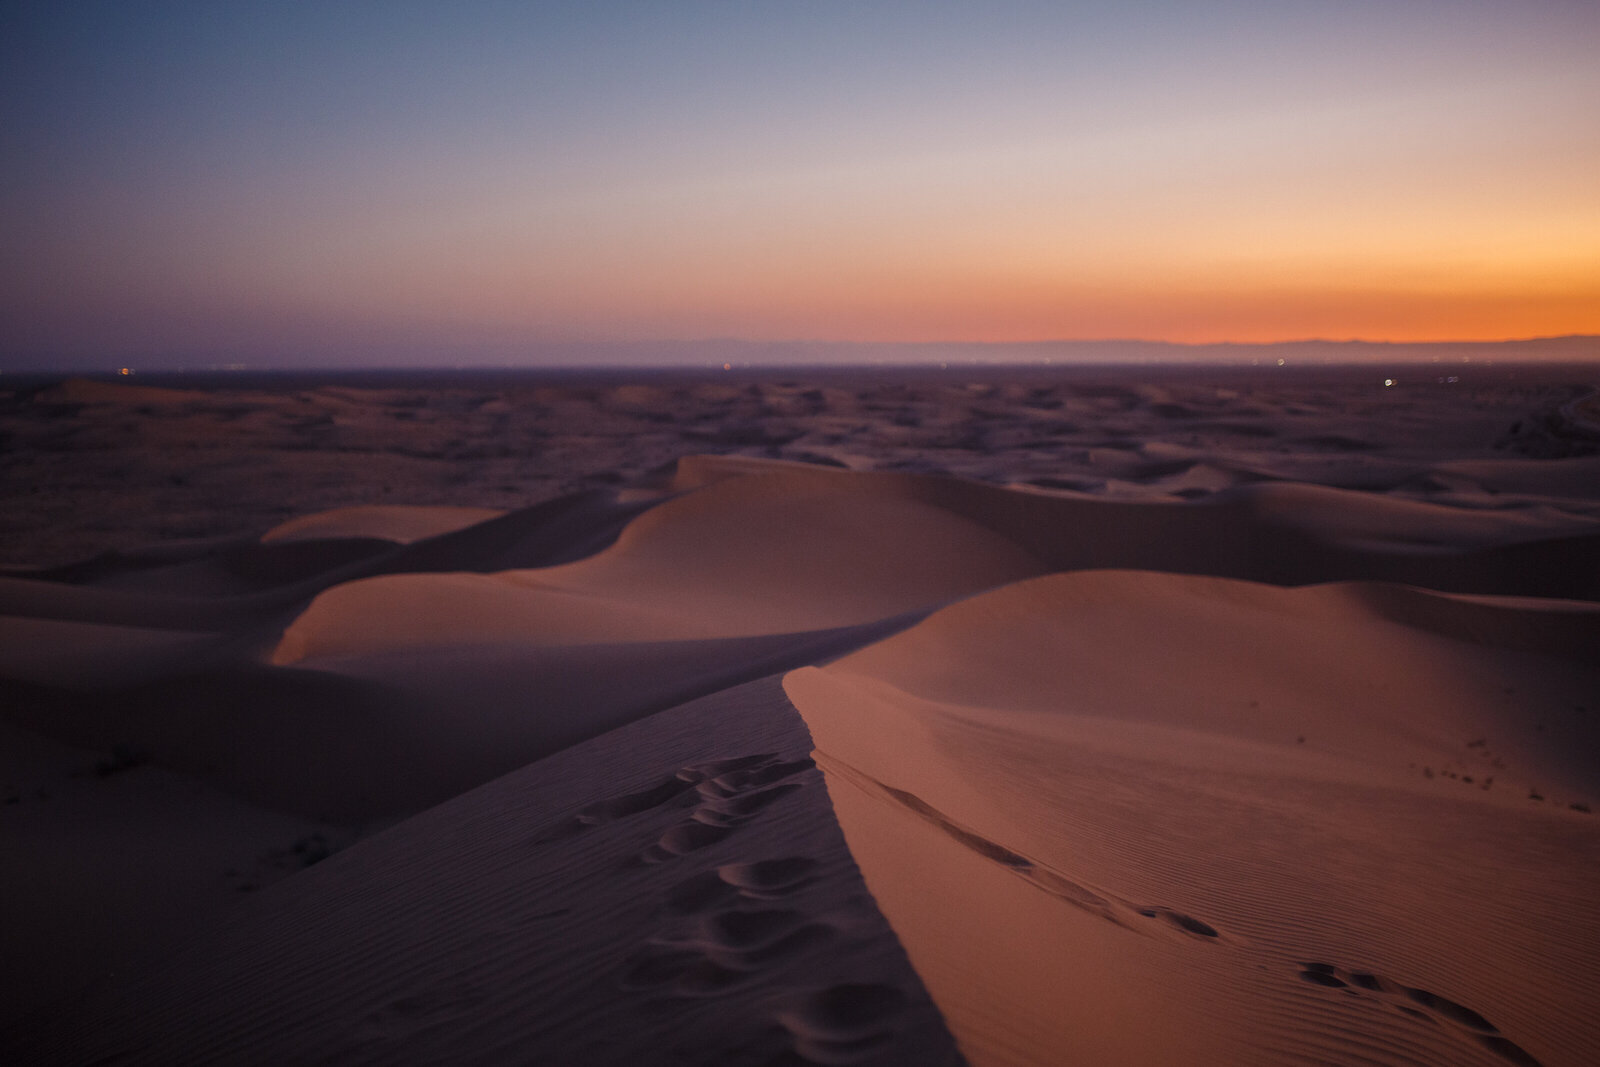 algodones sand dunes landscape at sunset